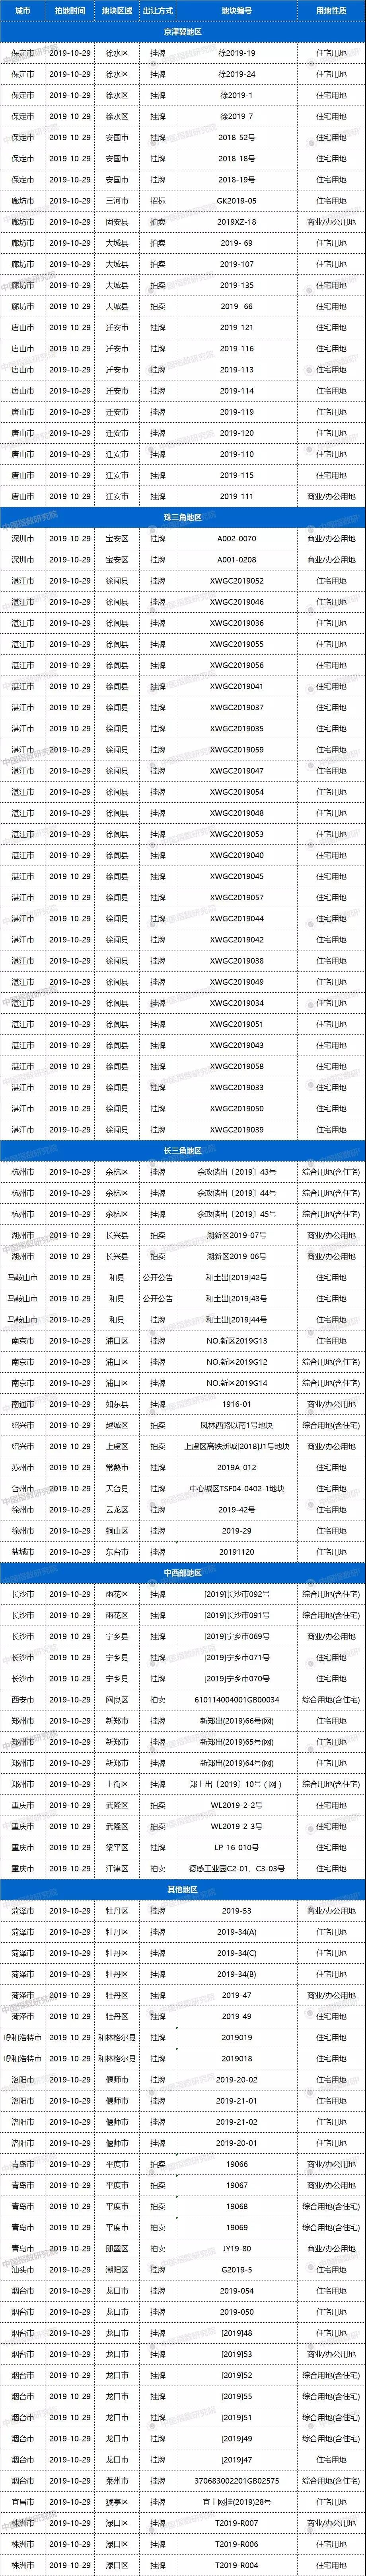 土拍预告 | 10月29日27城116宗地块出让，杭州、苏州、南京、西安均有宅地出让